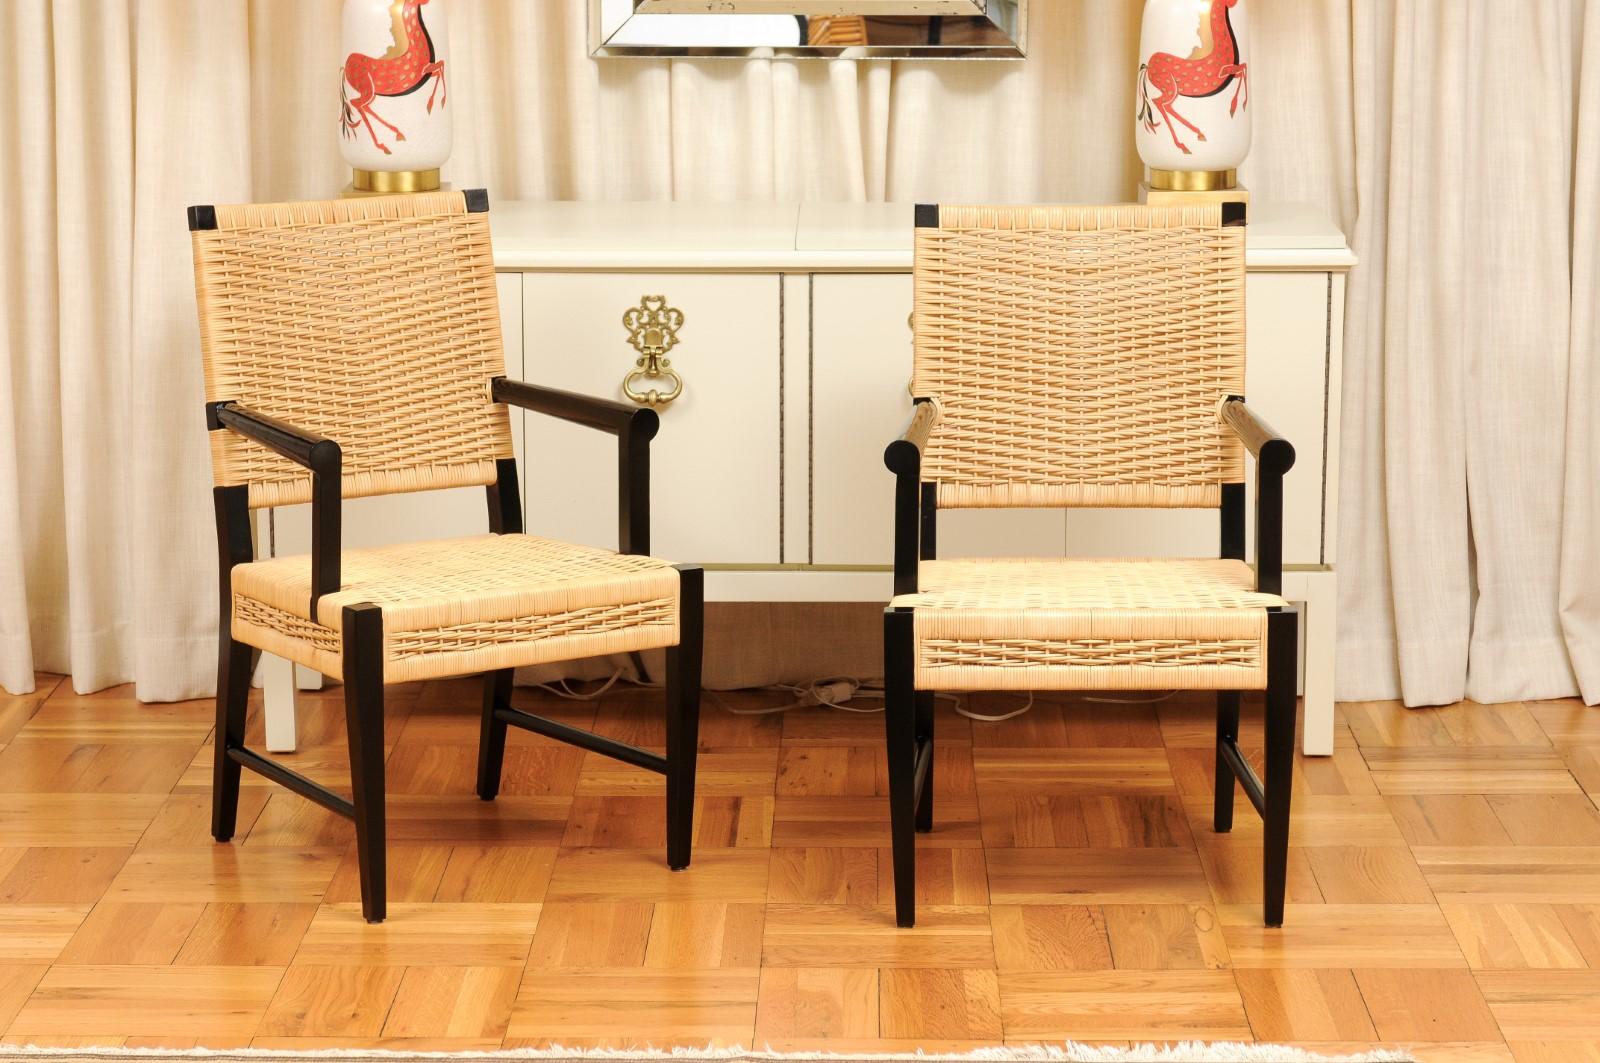 Ce magnifique ensemble de chaises de salle à manger est expédié tel que photographié et décrit dans le texte de l'annonce : Méticuleusement restaurées par des professionnels et entièrement prêtes à être installées. Un service de tissu sur mesure est